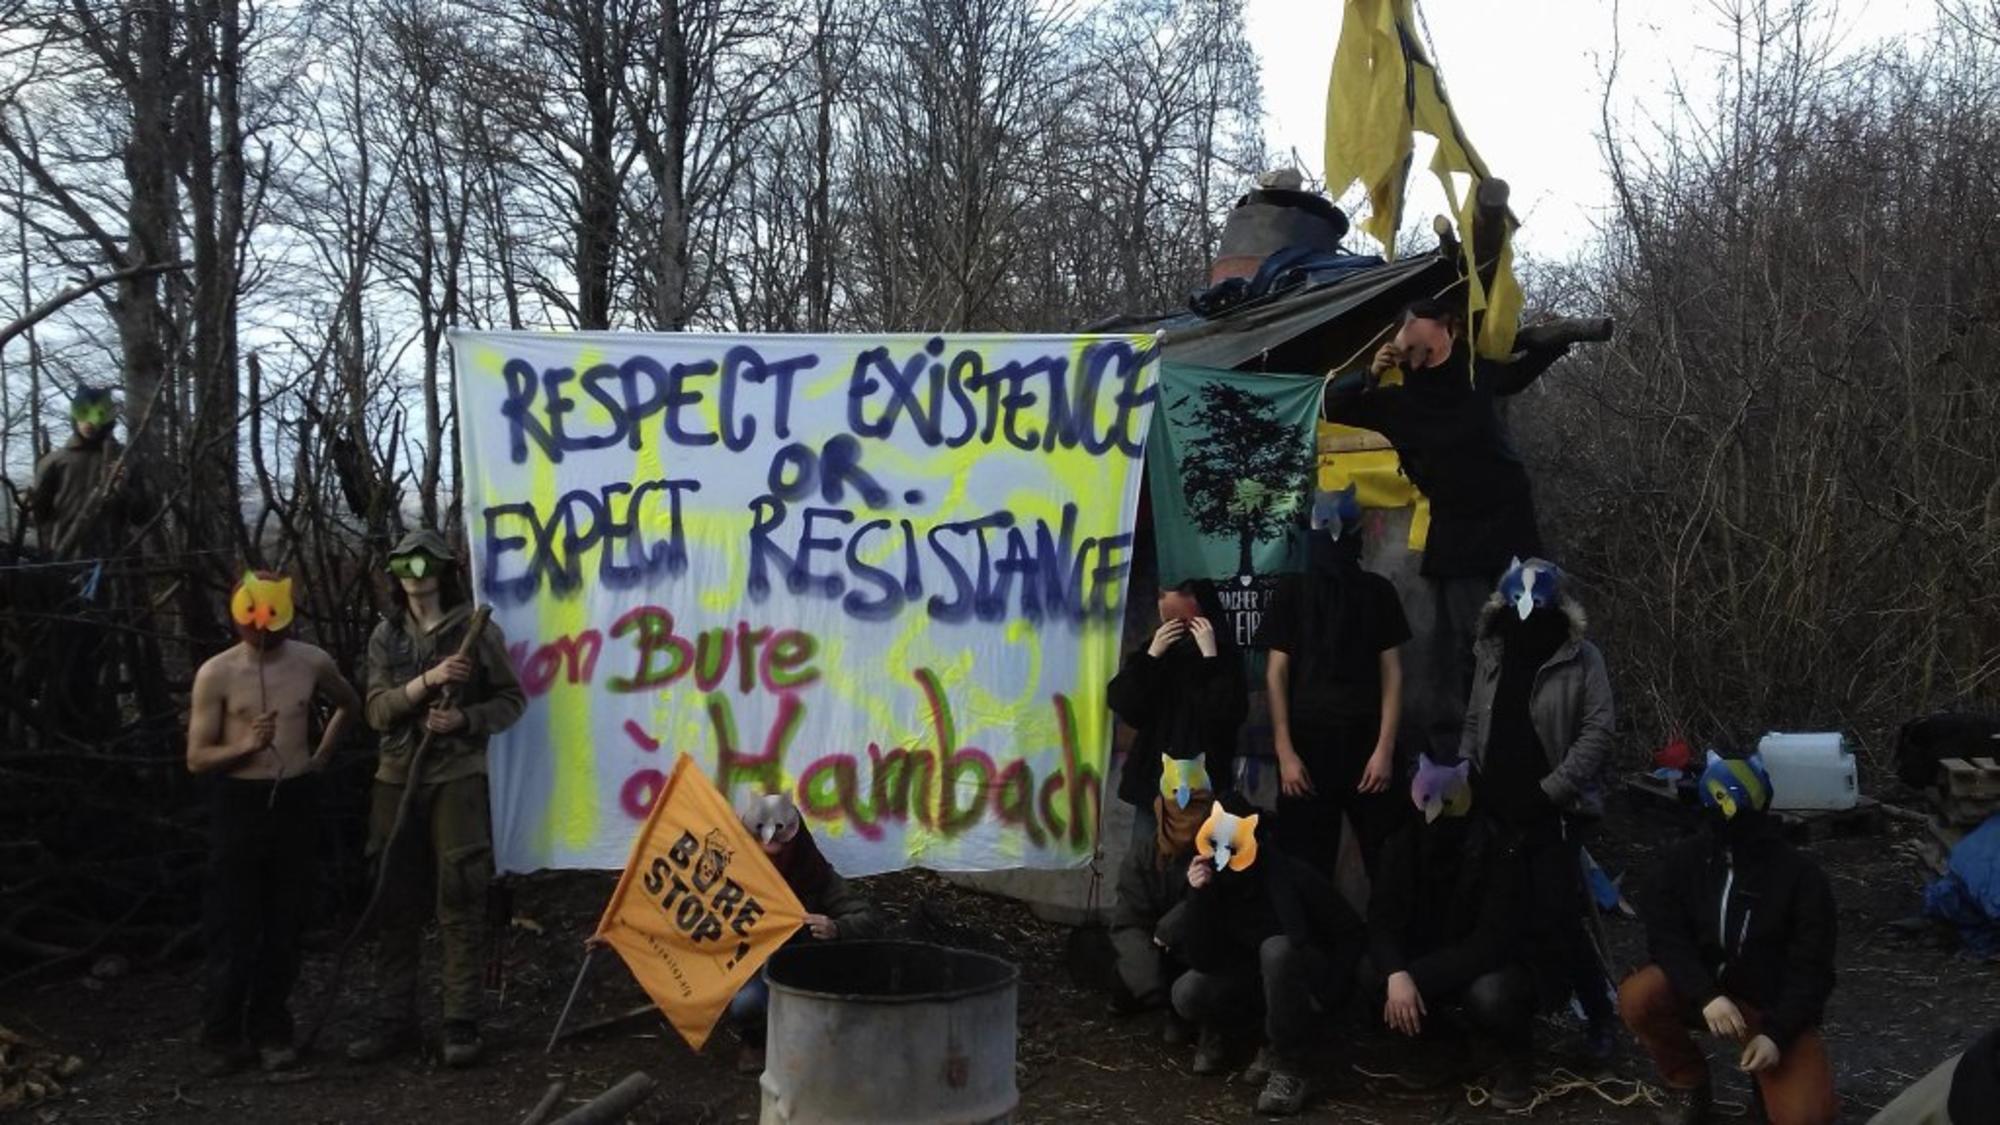 Las protestas en Bure contra los residuos radiactivos han sido respondidas con represión estatal. Fuente: Beyond Nuclear International